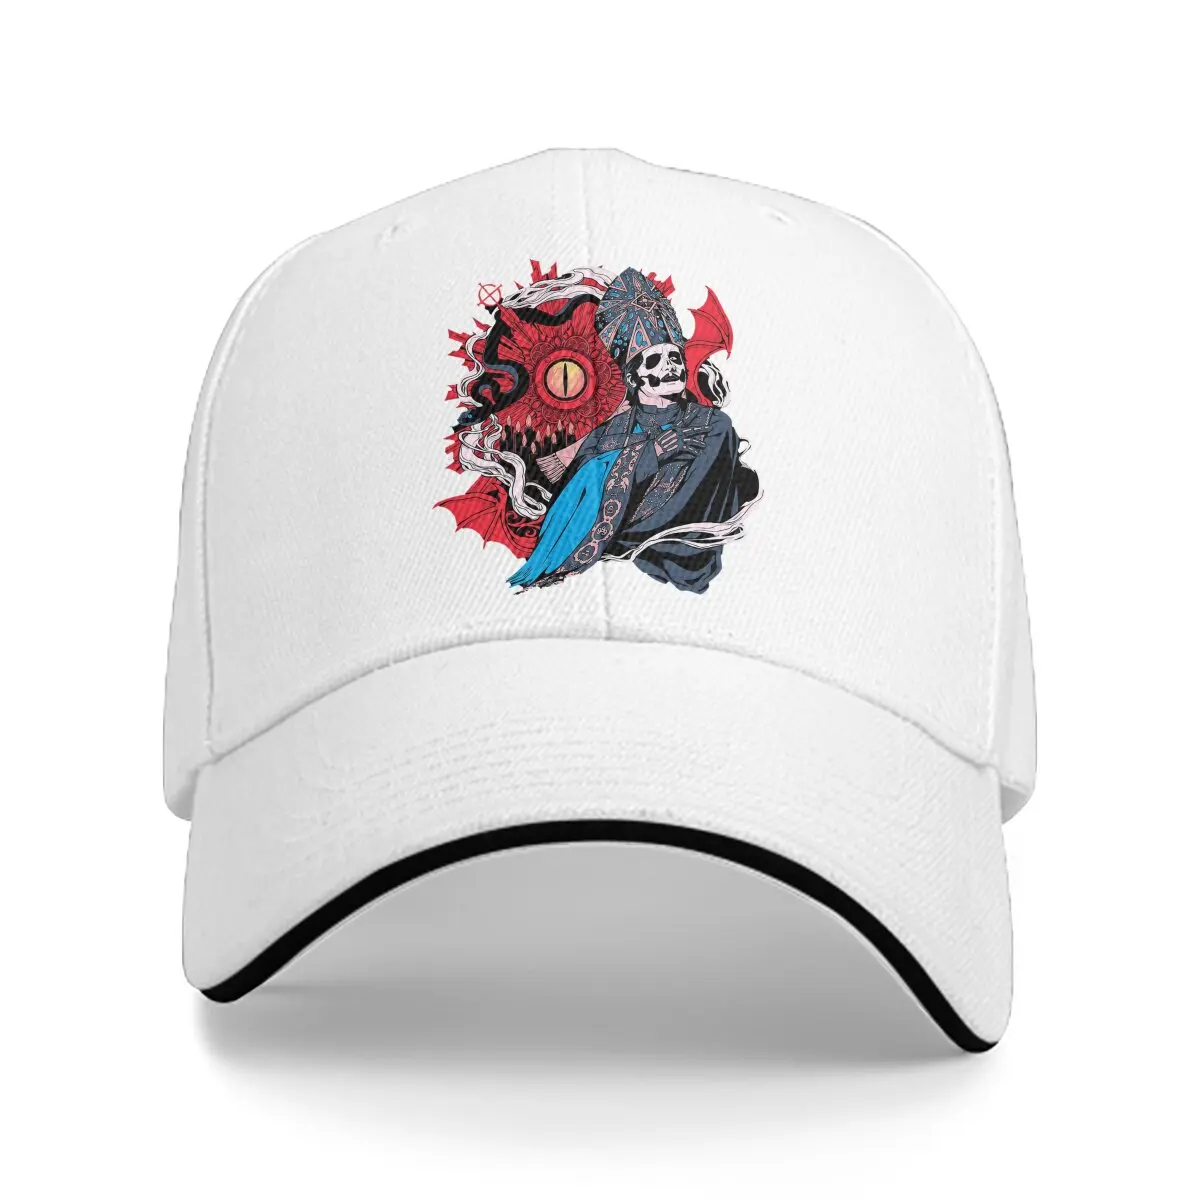 

Новые бейсбольные кепки с призраком для влюбленных мужчин и женщин, бейсболки с логотипом setan goib, без надписи, грузовик, кепки для гольфа